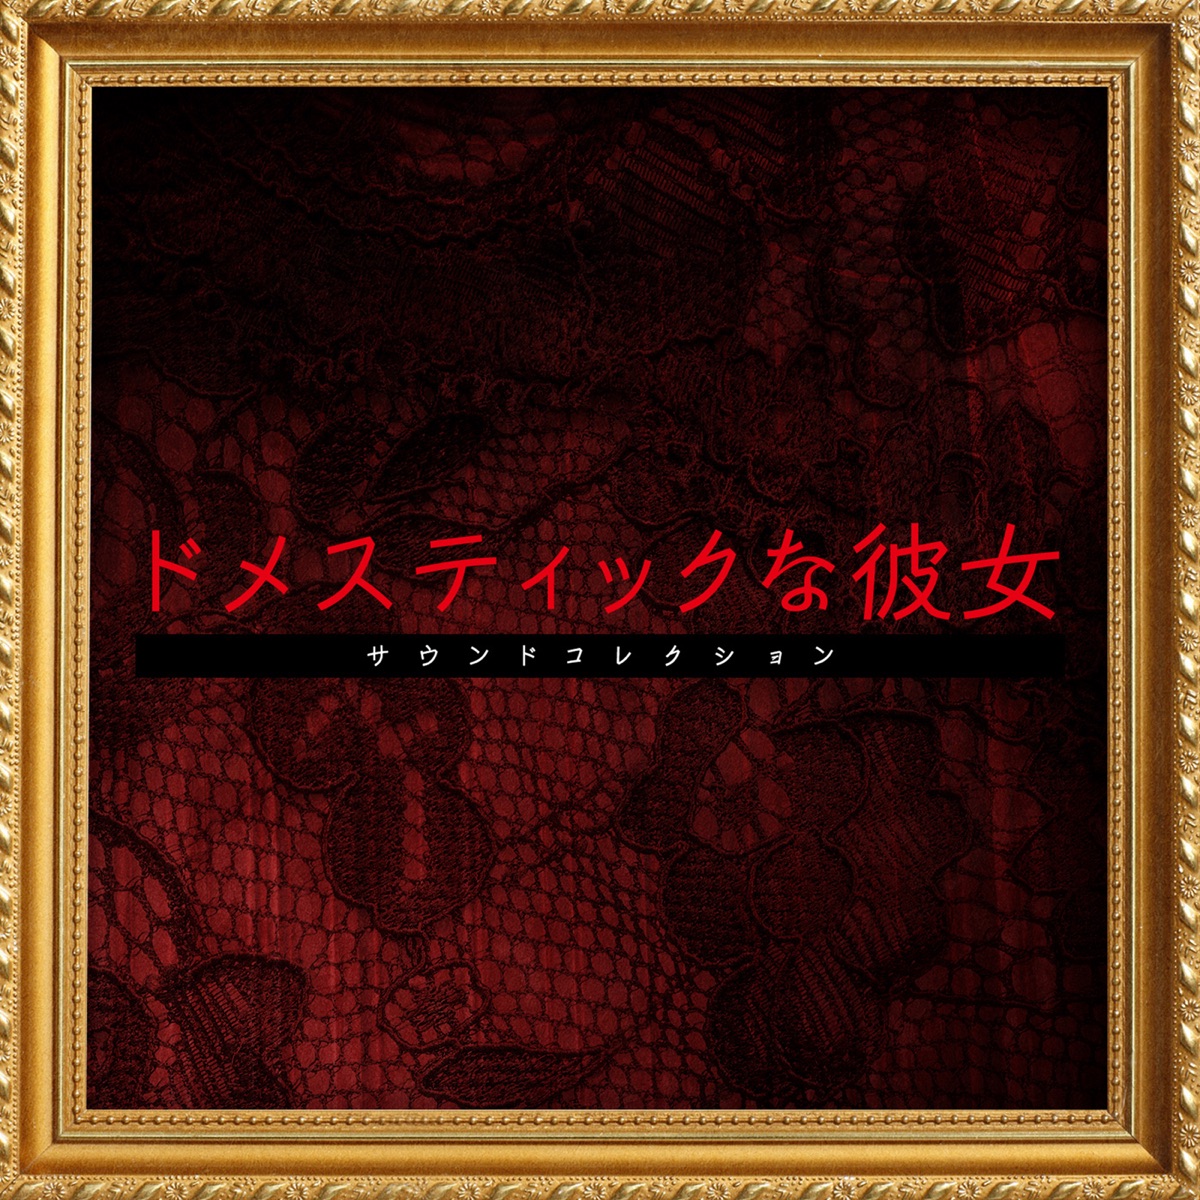 Conception 2 Children of the Seven Stars (Original Soundtrack) - Album by  Masato Kouda - Apple Music